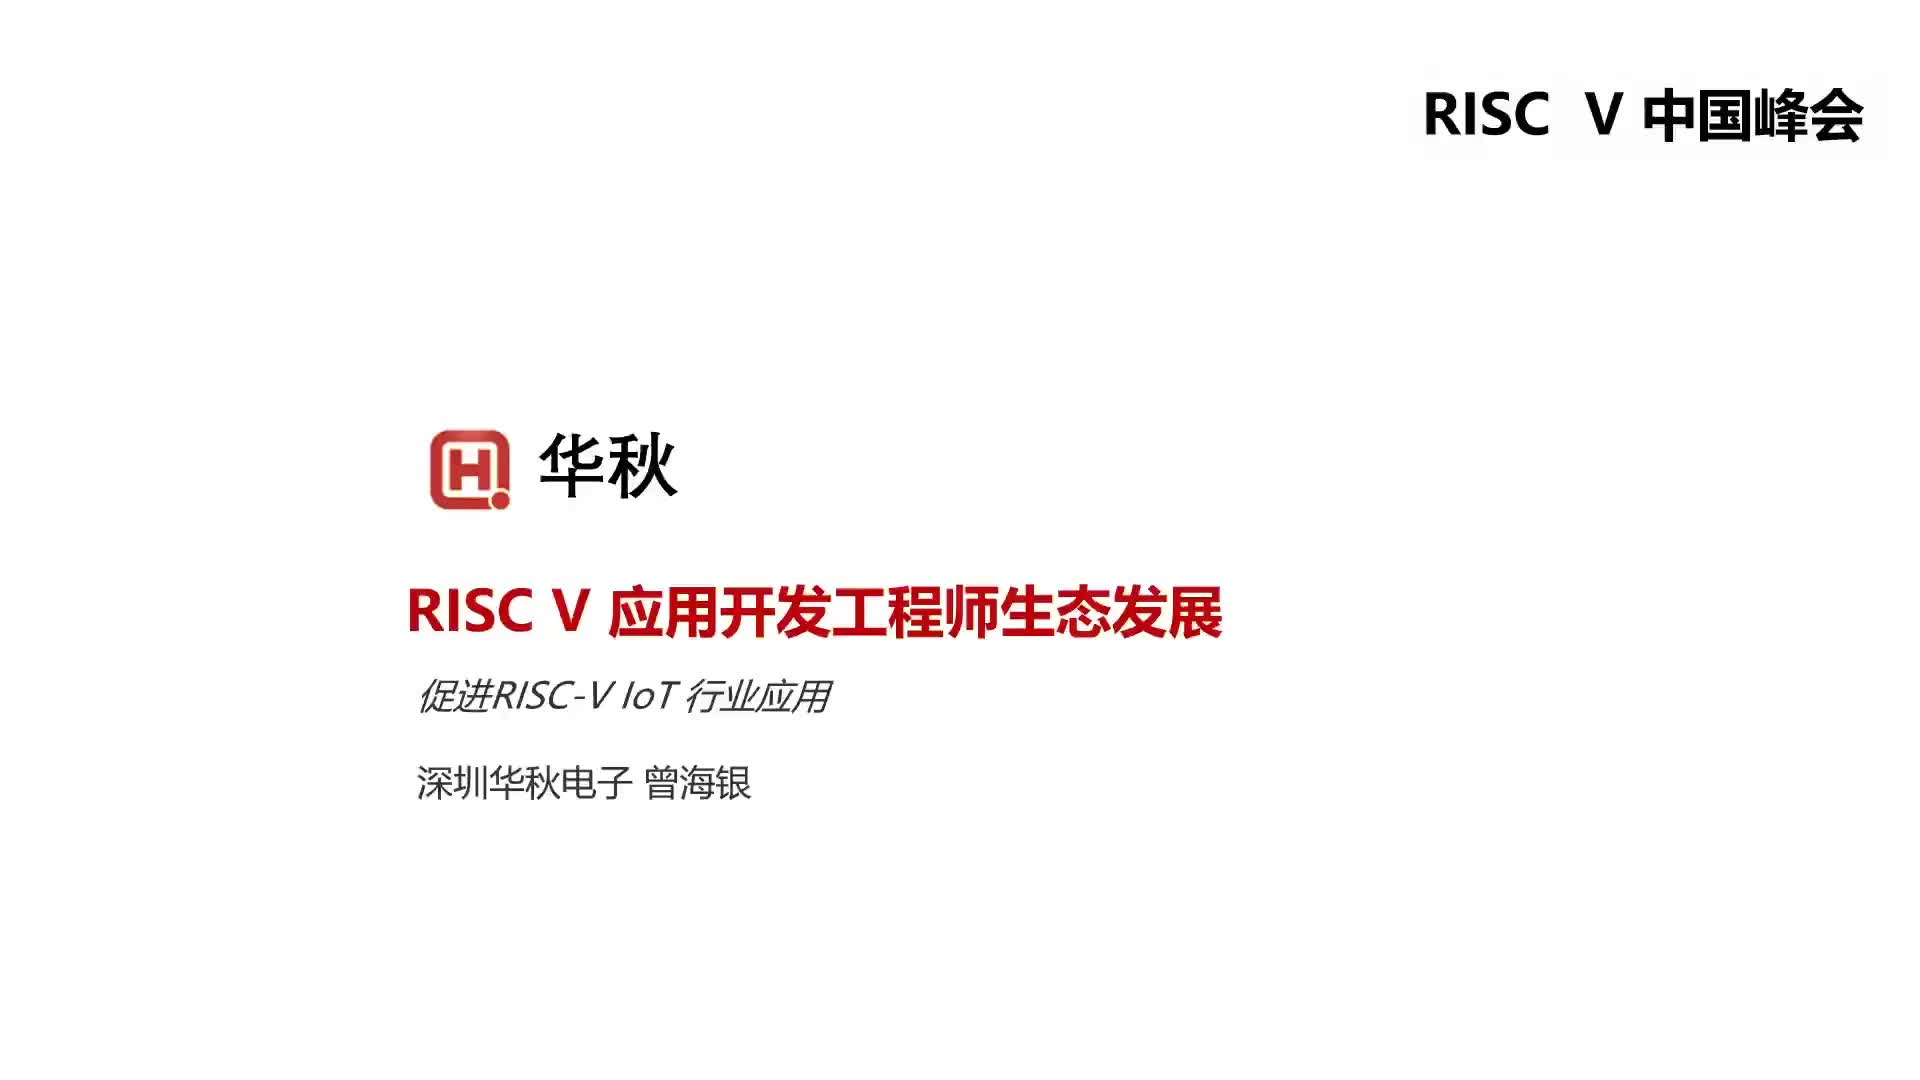 【曾海银】RISC-V应用开发工程师生态发展 - 第一届 RISC-V 中国峰会1